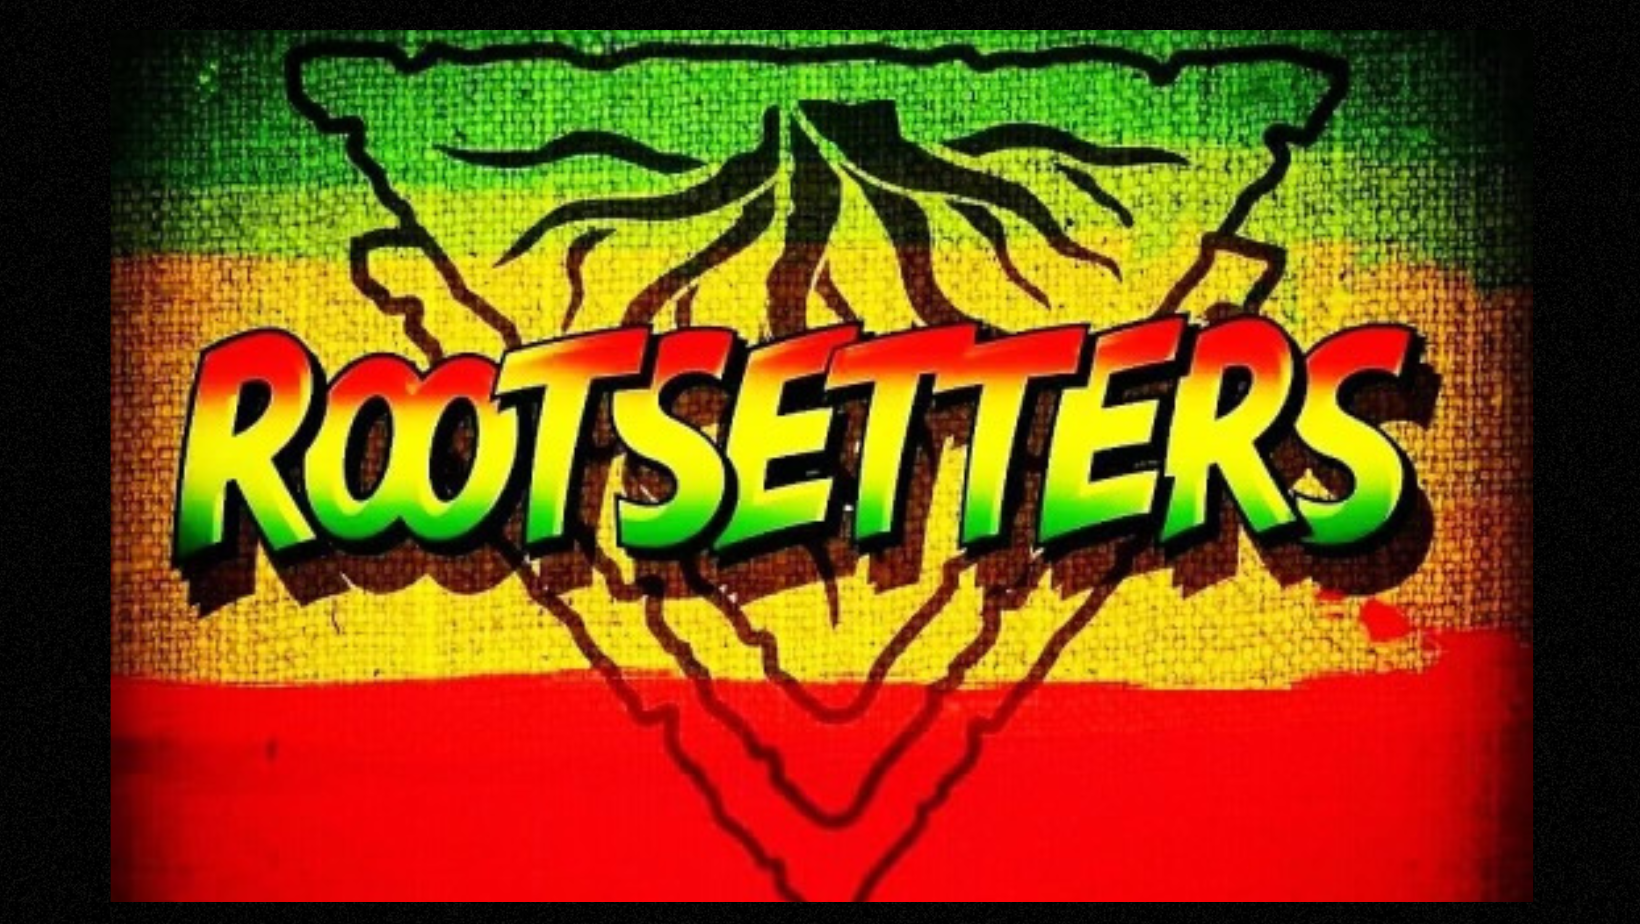 FRI. APR. 19: RootSetters